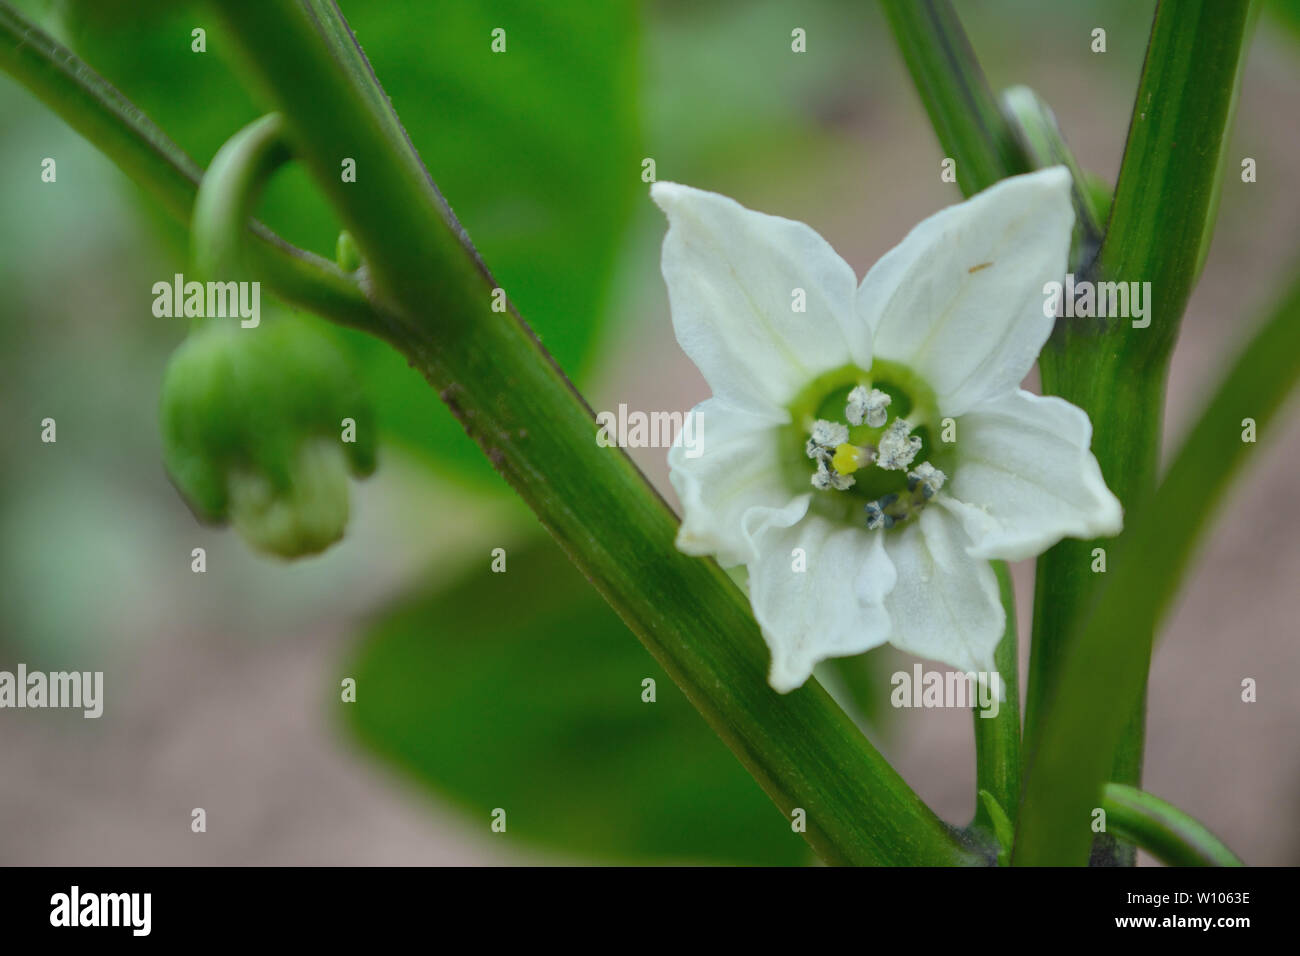 Macro of white bell pepper flower Stock Photo